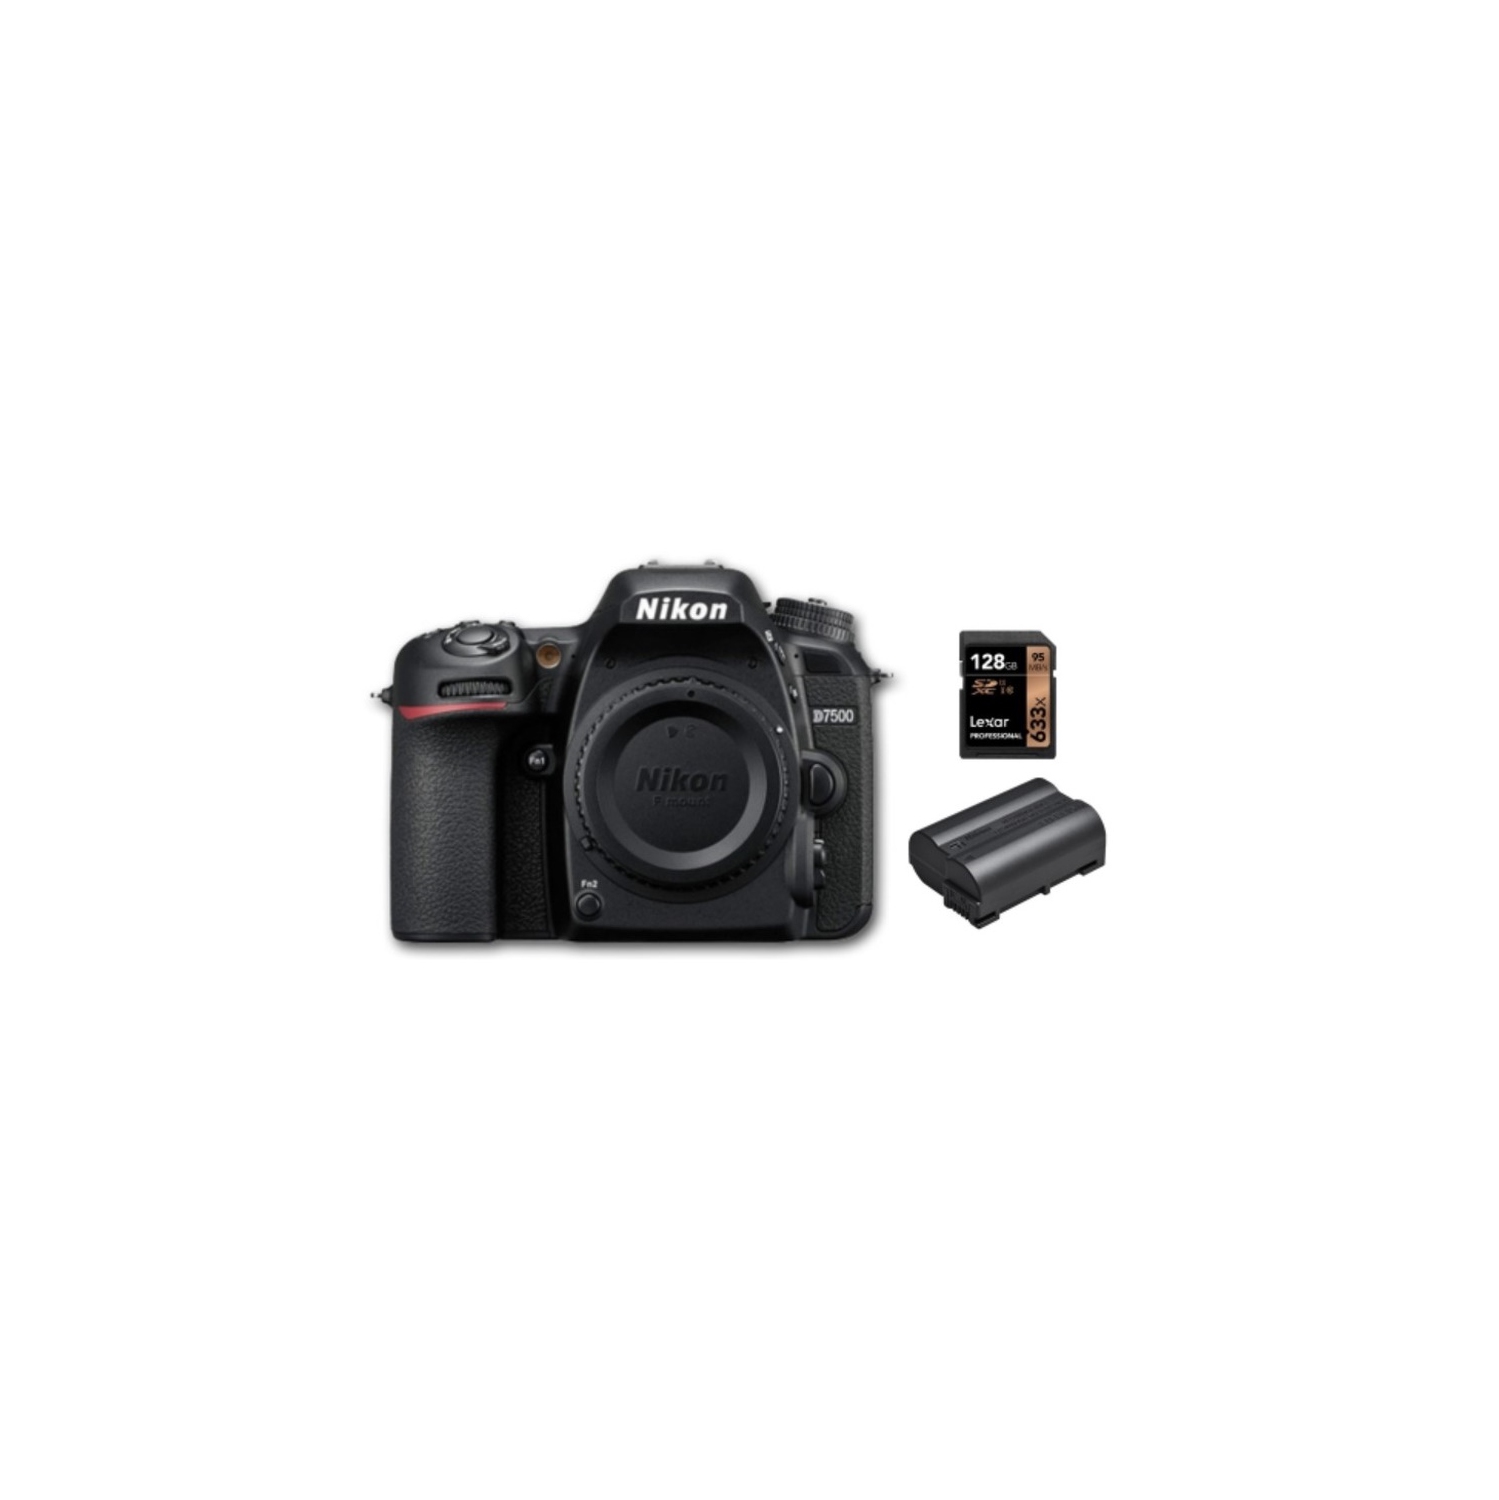 Nikon D7500 + EN-EL15C Batt + 128GB 800x SD